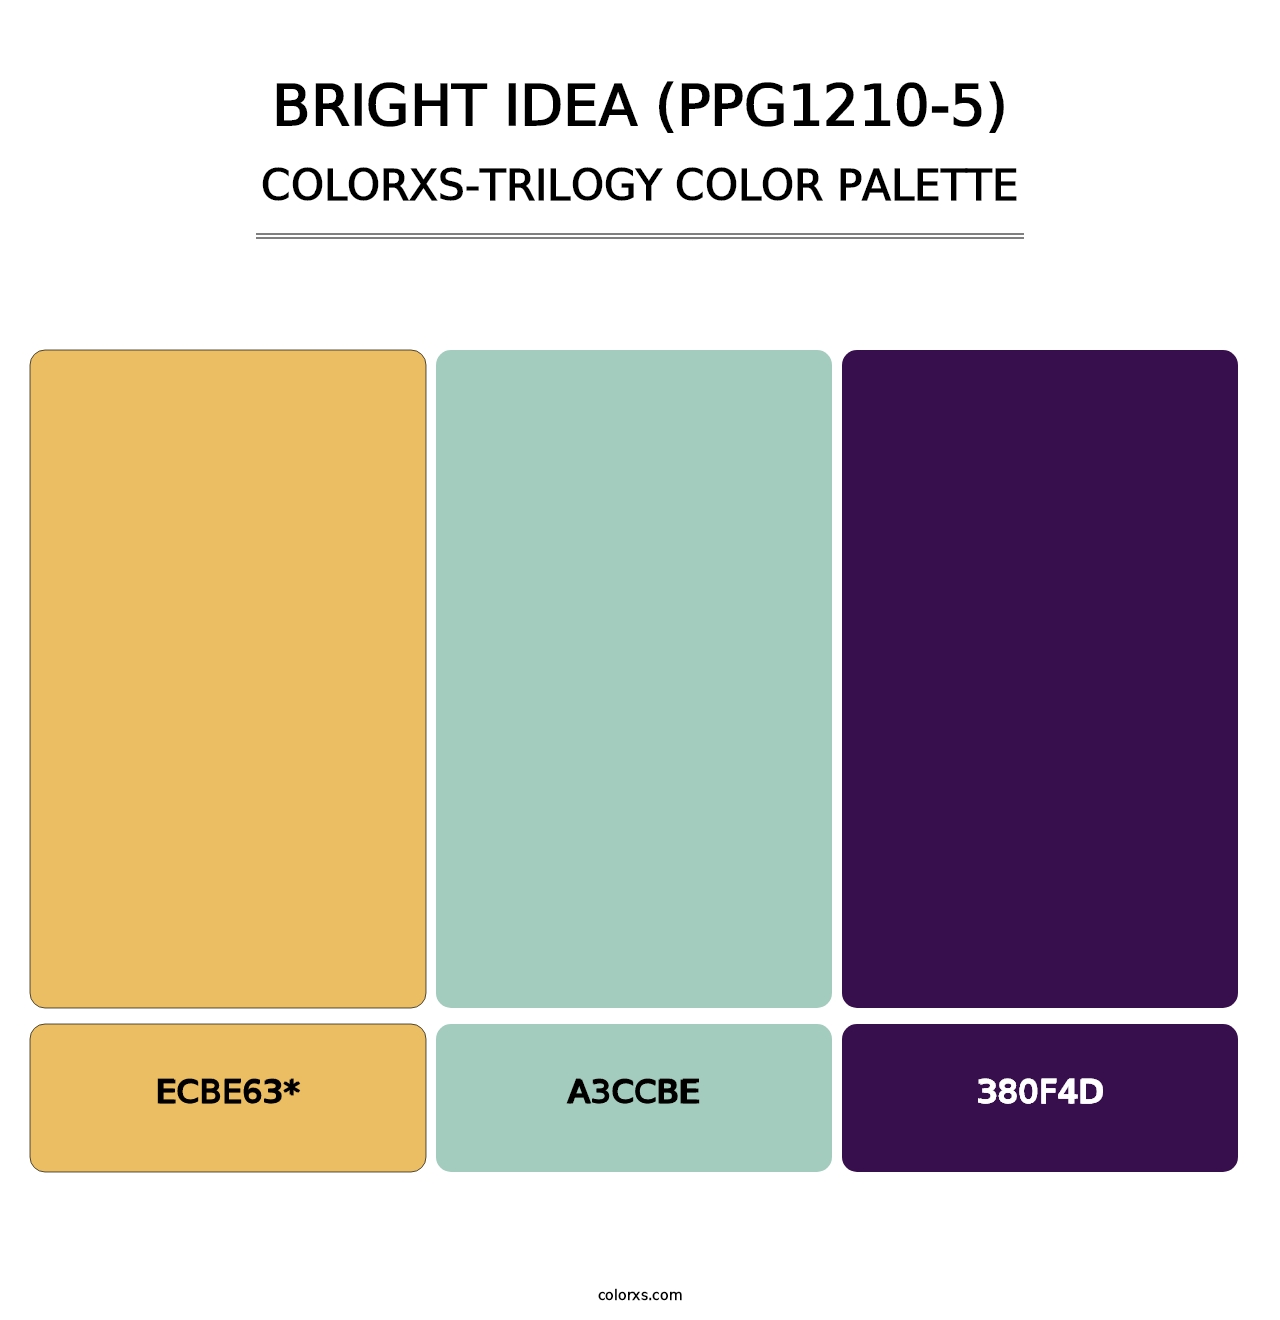 Bright Idea (PPG1210-5) - Colorxs Trilogy Palette